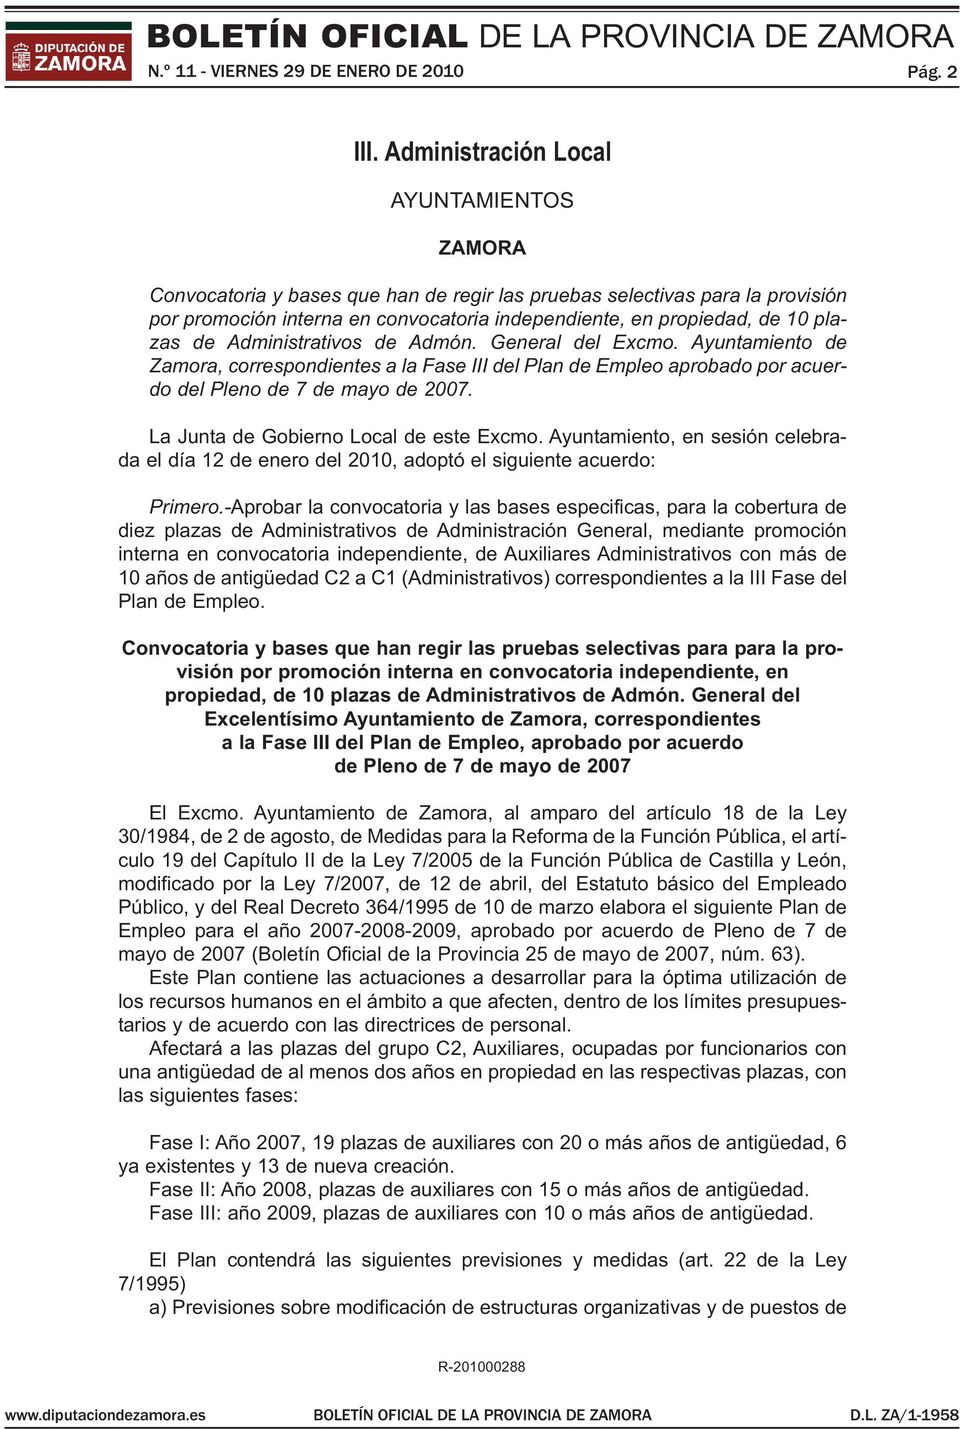 plazas de Administrativos de Admón. General del Excmo. Ayuntamiento de Zamora, correspondientes a la Fase III del Plan de Empleo aprobado por acuerdo del Pleno de 7 de mayo de 2007.